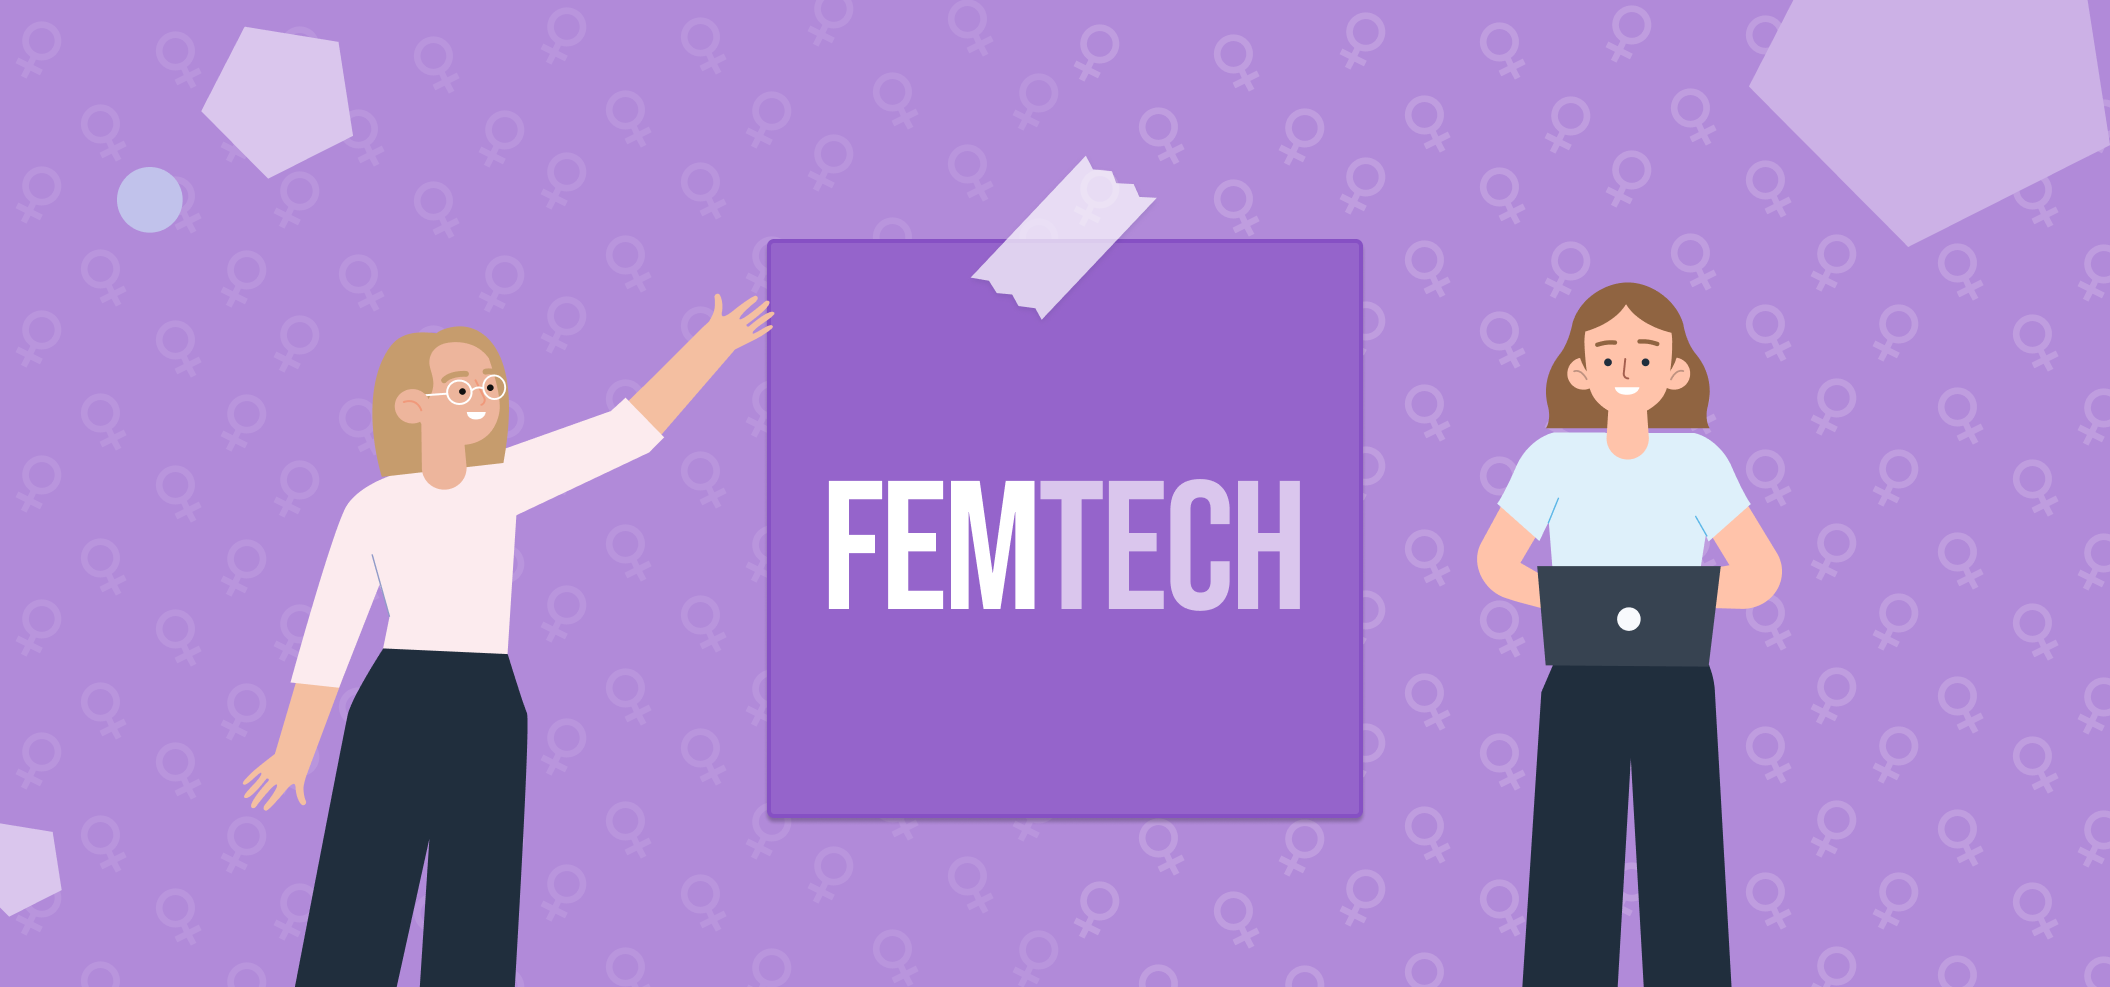 Femtech: Understanding women’s health technology